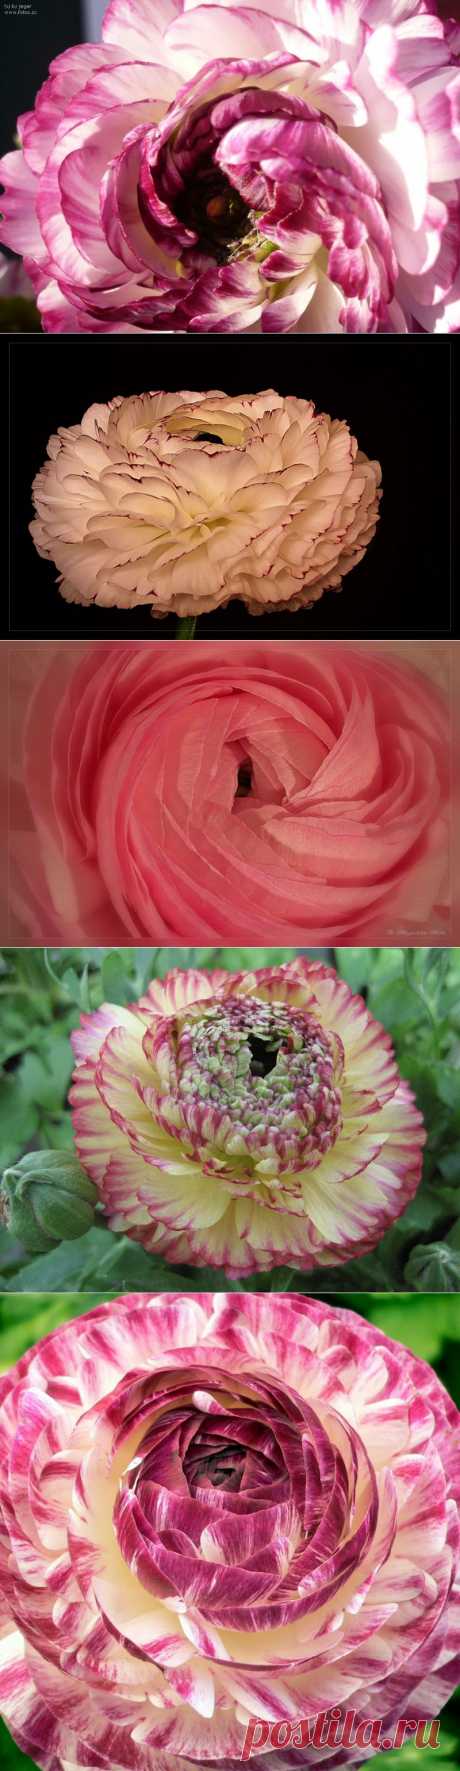 Азиатские лютики. Ранункулюсы — розы весны | Newpix.ru - позитивный интернет-журнал